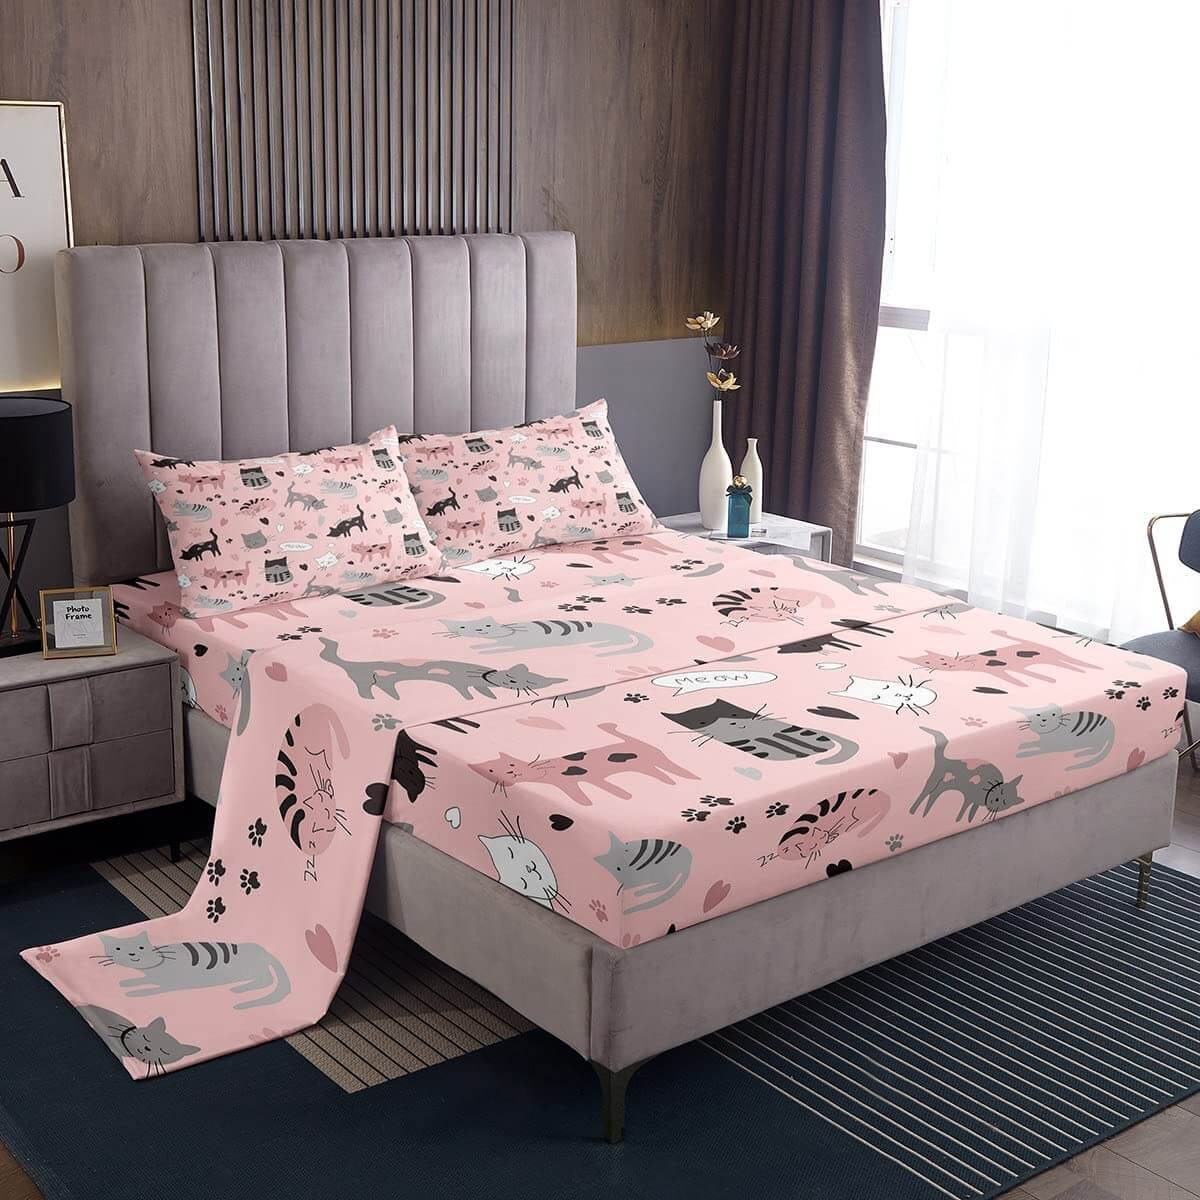 цена Комплект постельного белья для детей Erosebridal Cat Lover's, 4 предмета, розовый/серый/белый